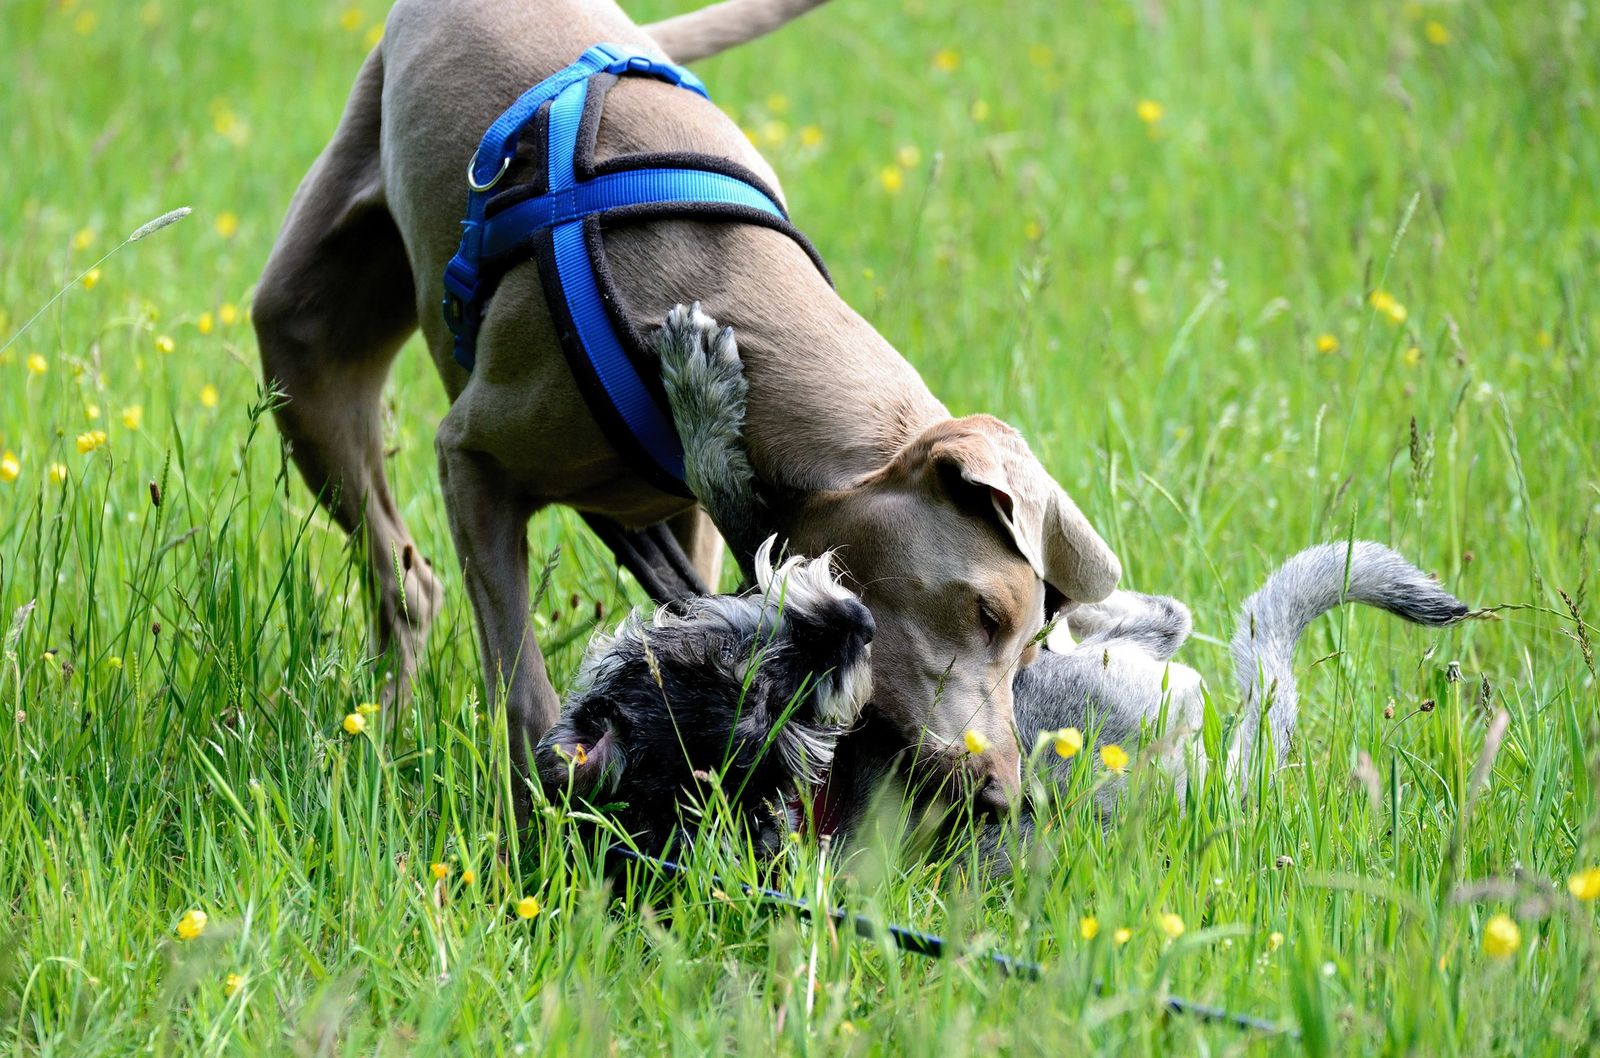 Ein Weimaraner mit blauem Hundegeschirr beißt einen am Boden liegenden Hund auf einer Wiese